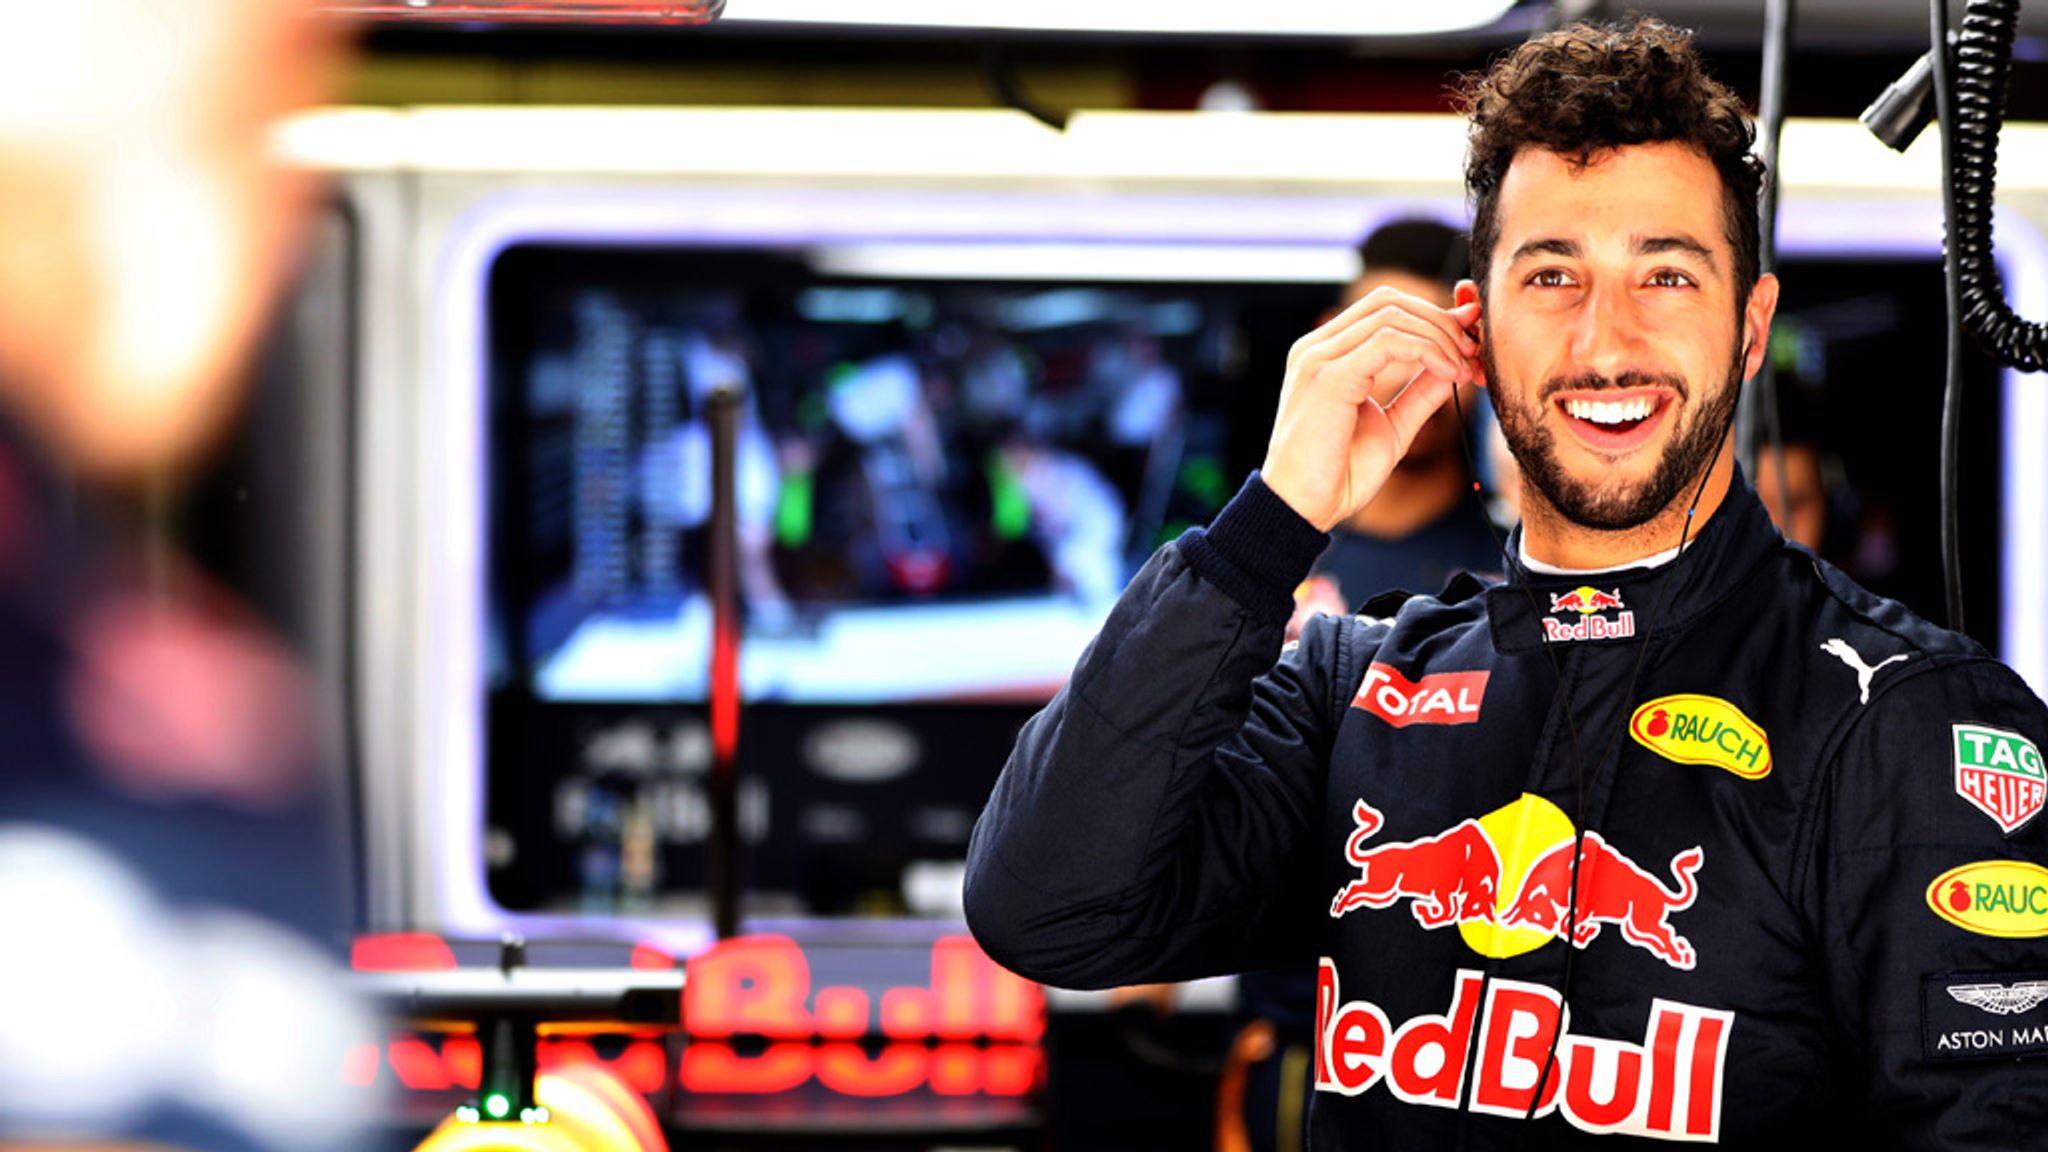 Daniel Ricciardo: